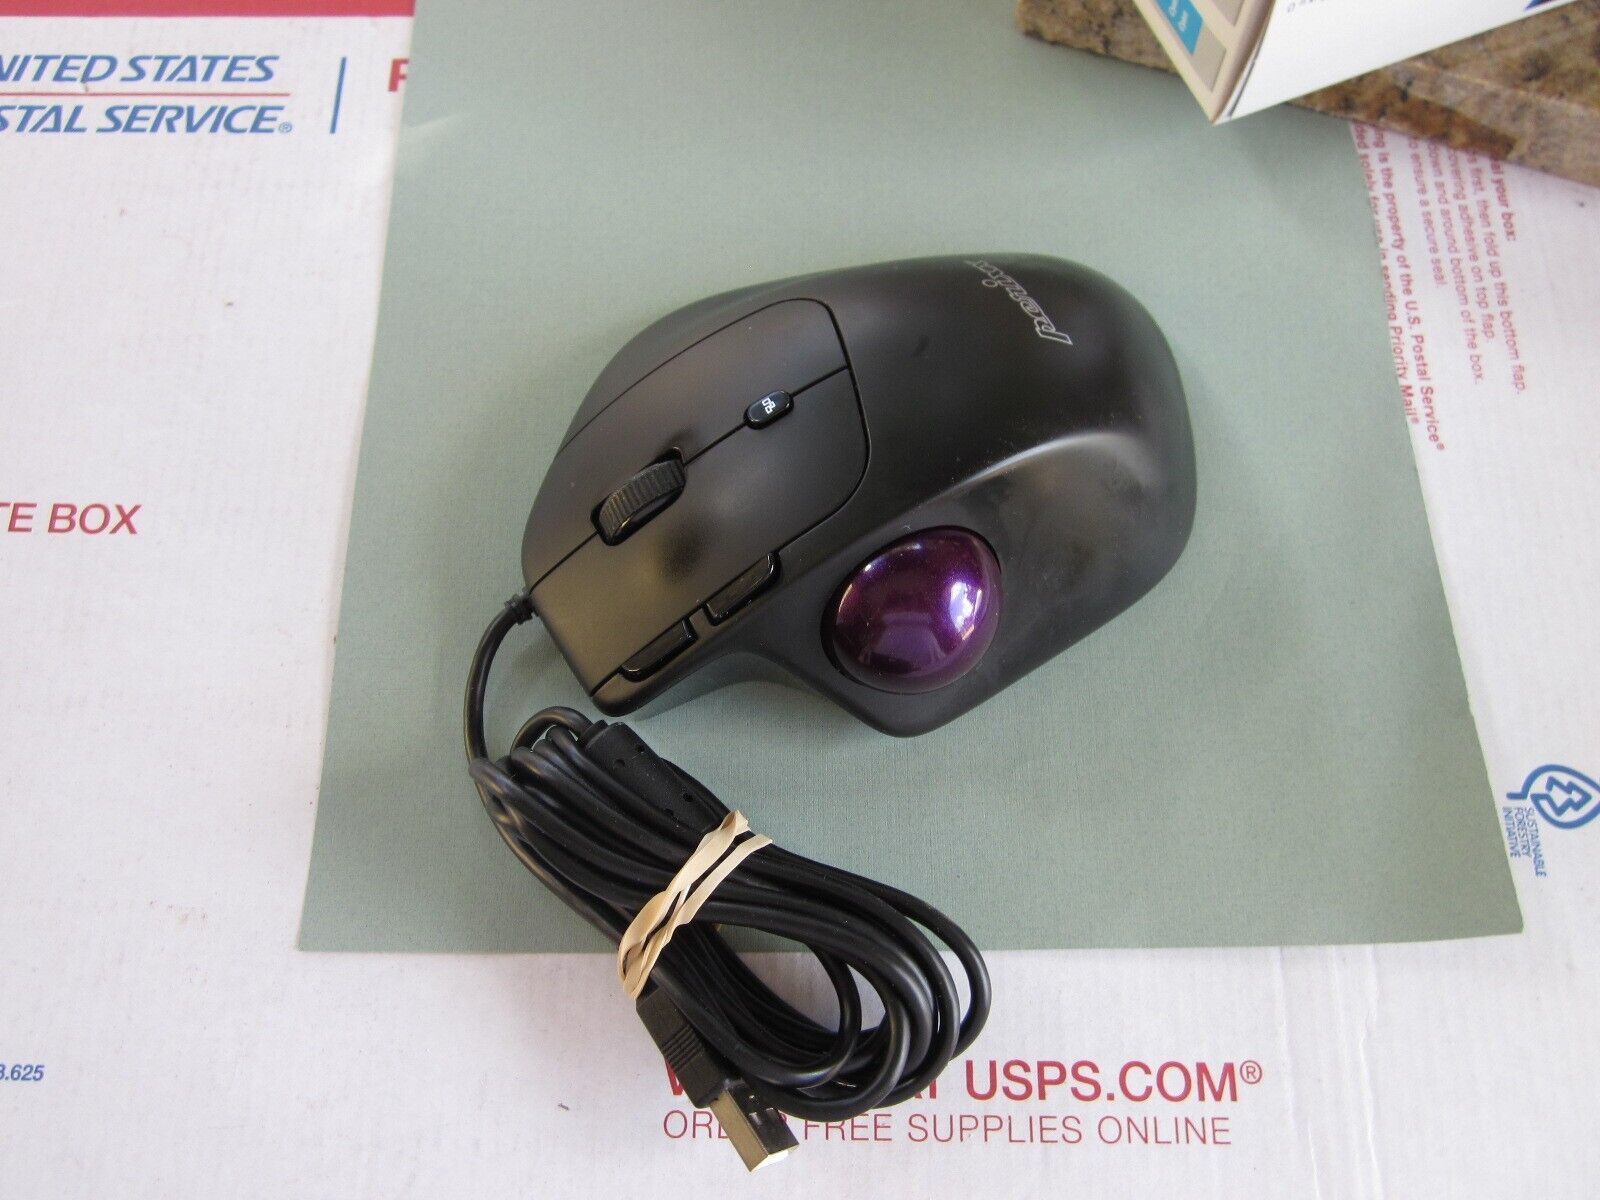 Perixx PERIMICE-520, Wired Ergonomic Programmable Trackball Mouse - 